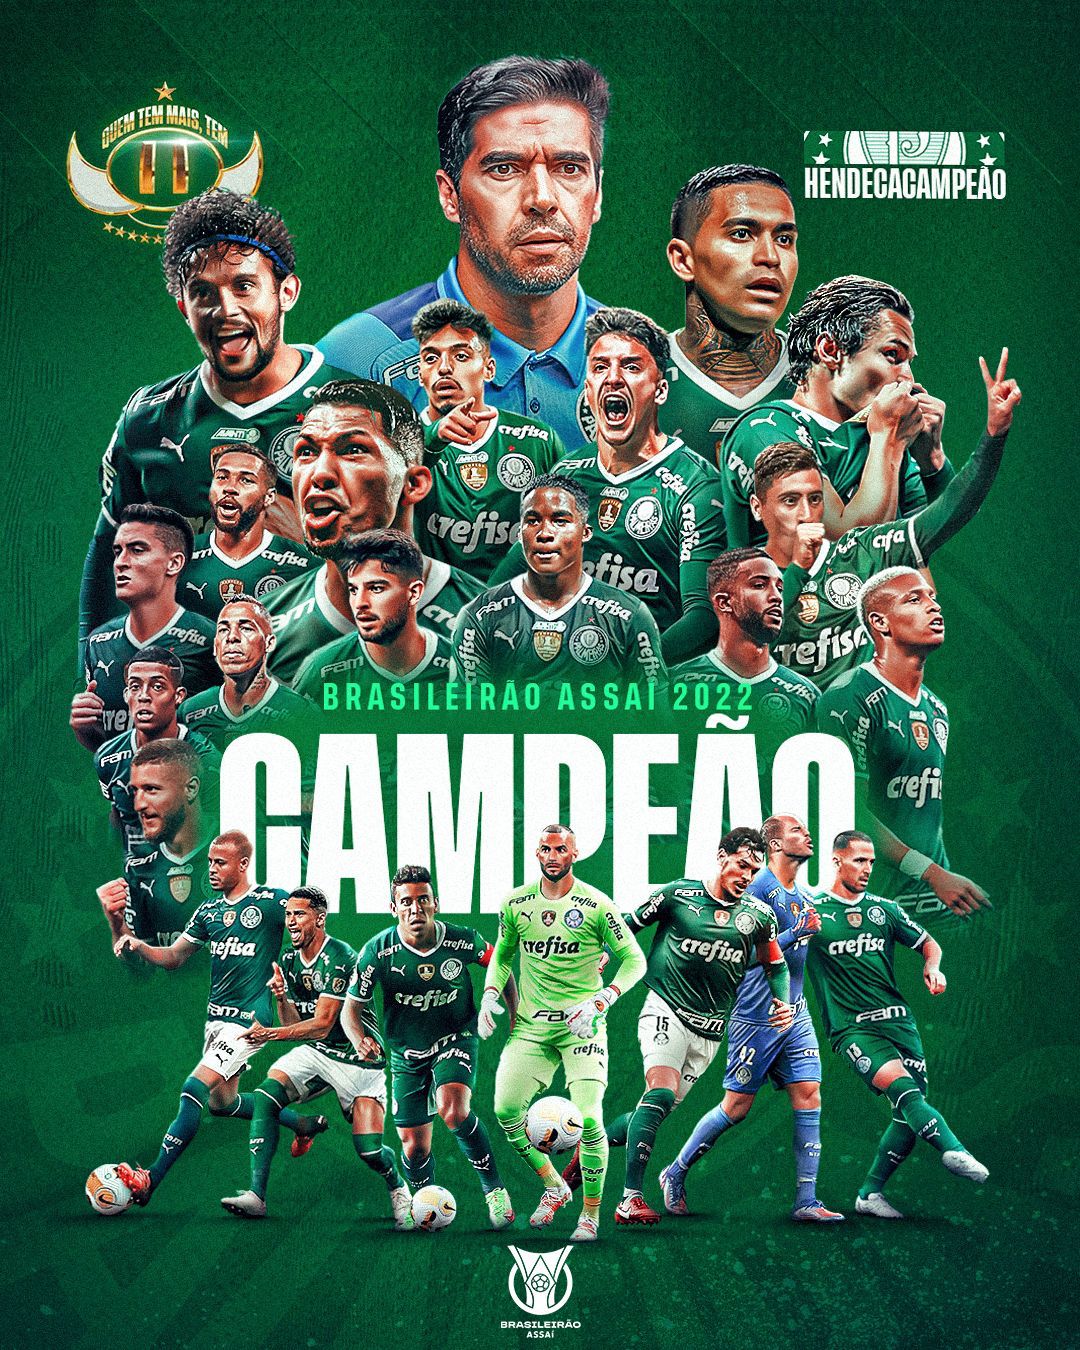 Palmeiras Campeão Mundial 2022 